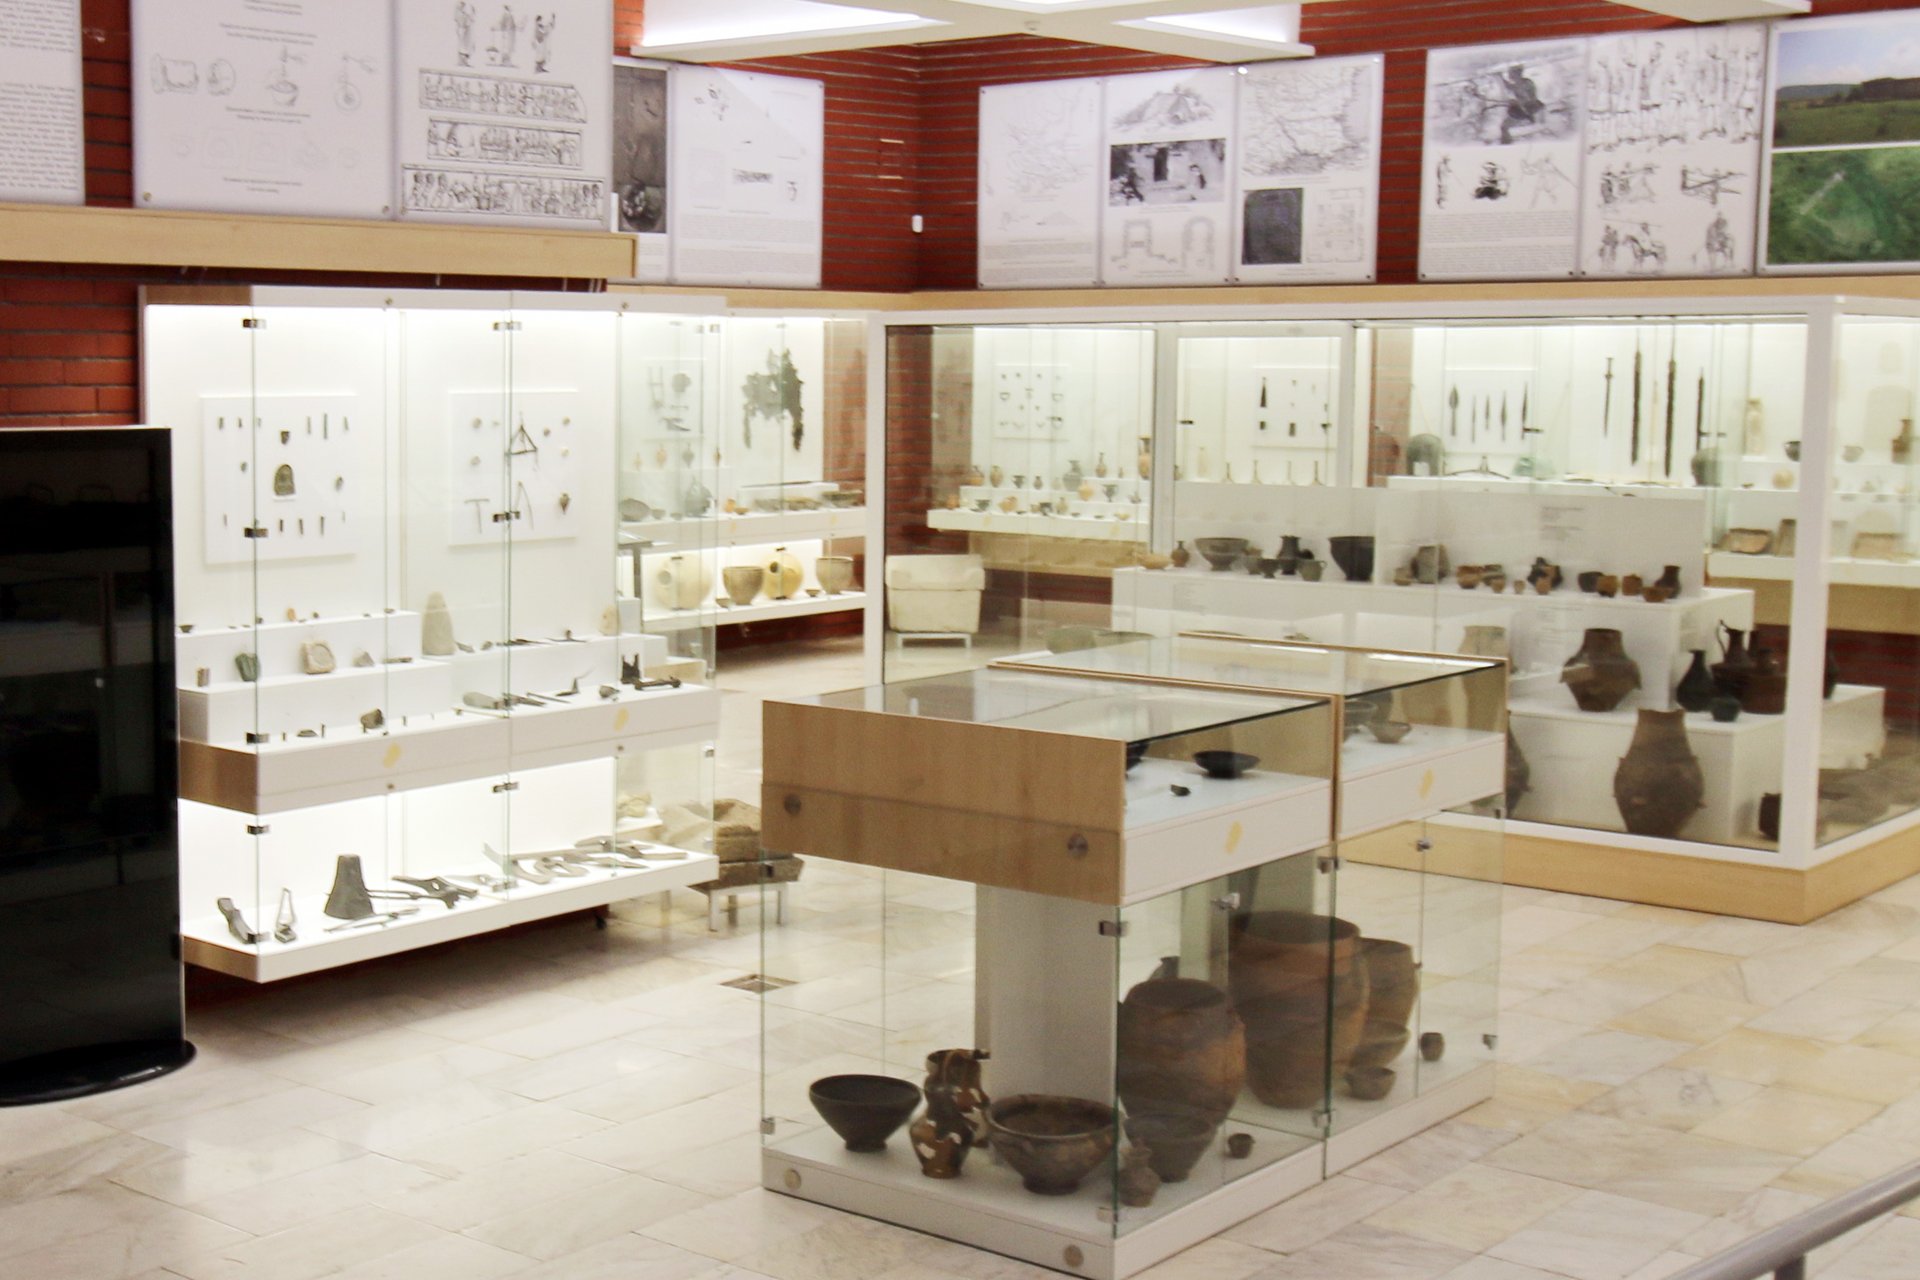 Находки от археологическите проучвания на Селищната могила при село Сушина  могат да се видят в Регионалния исторически музей в Шумен.